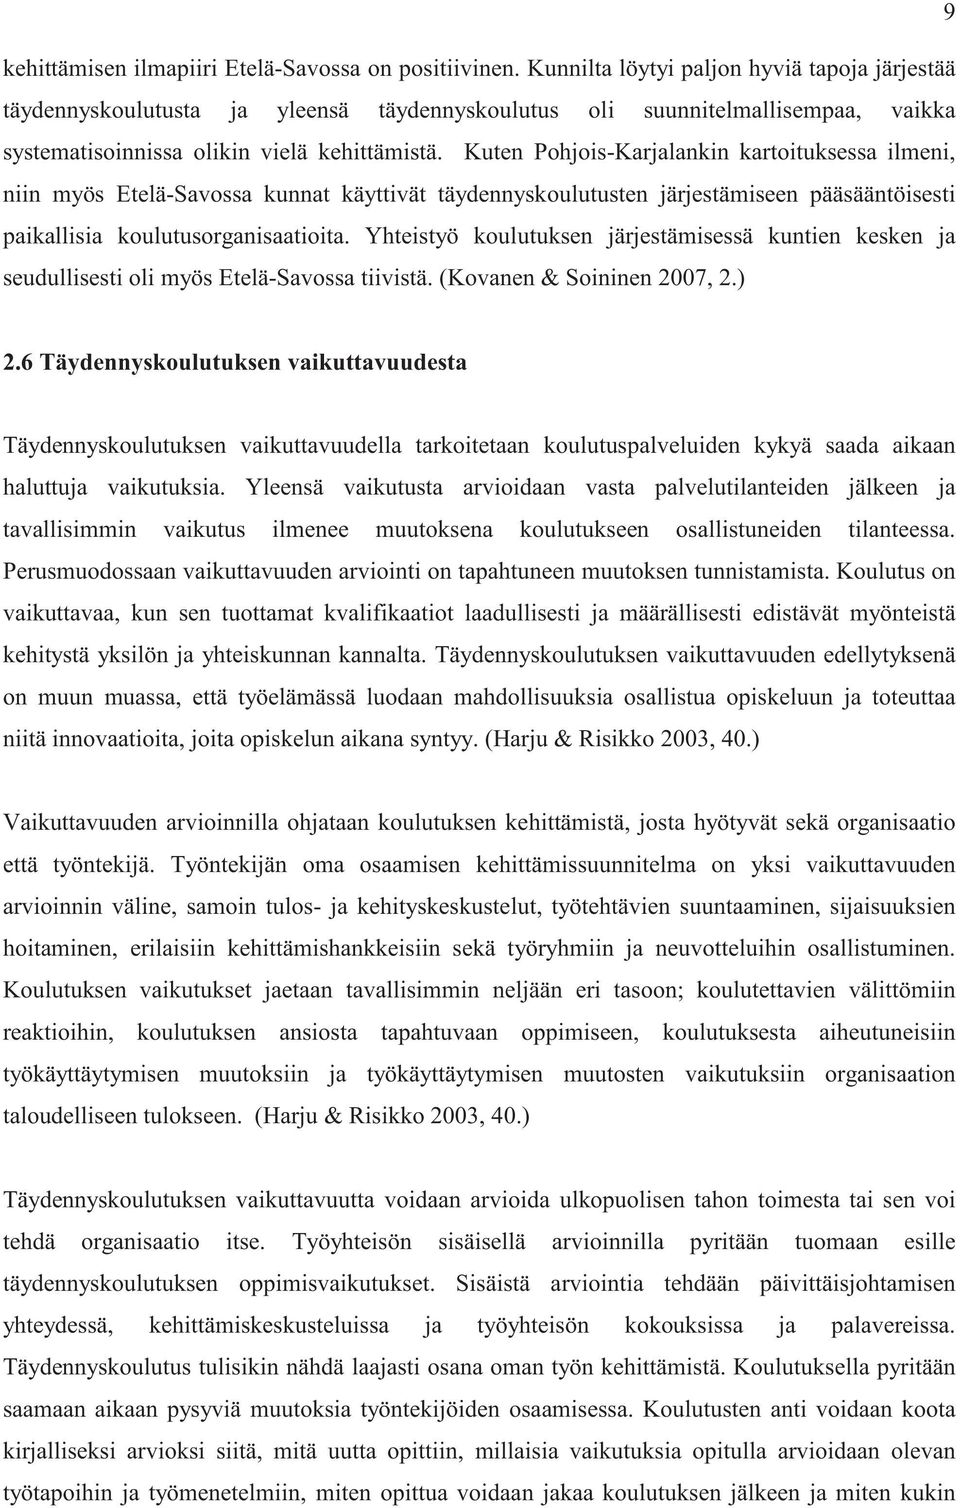 Kuten Pohjois-Karjalankin kartoituksessa ilmeni, niin myös Etelä-Savossa kunnat käyttivät täydennyskoulutusten järjestämiseen pääsääntöisesti paikallisia koulutusorganisaatioita.